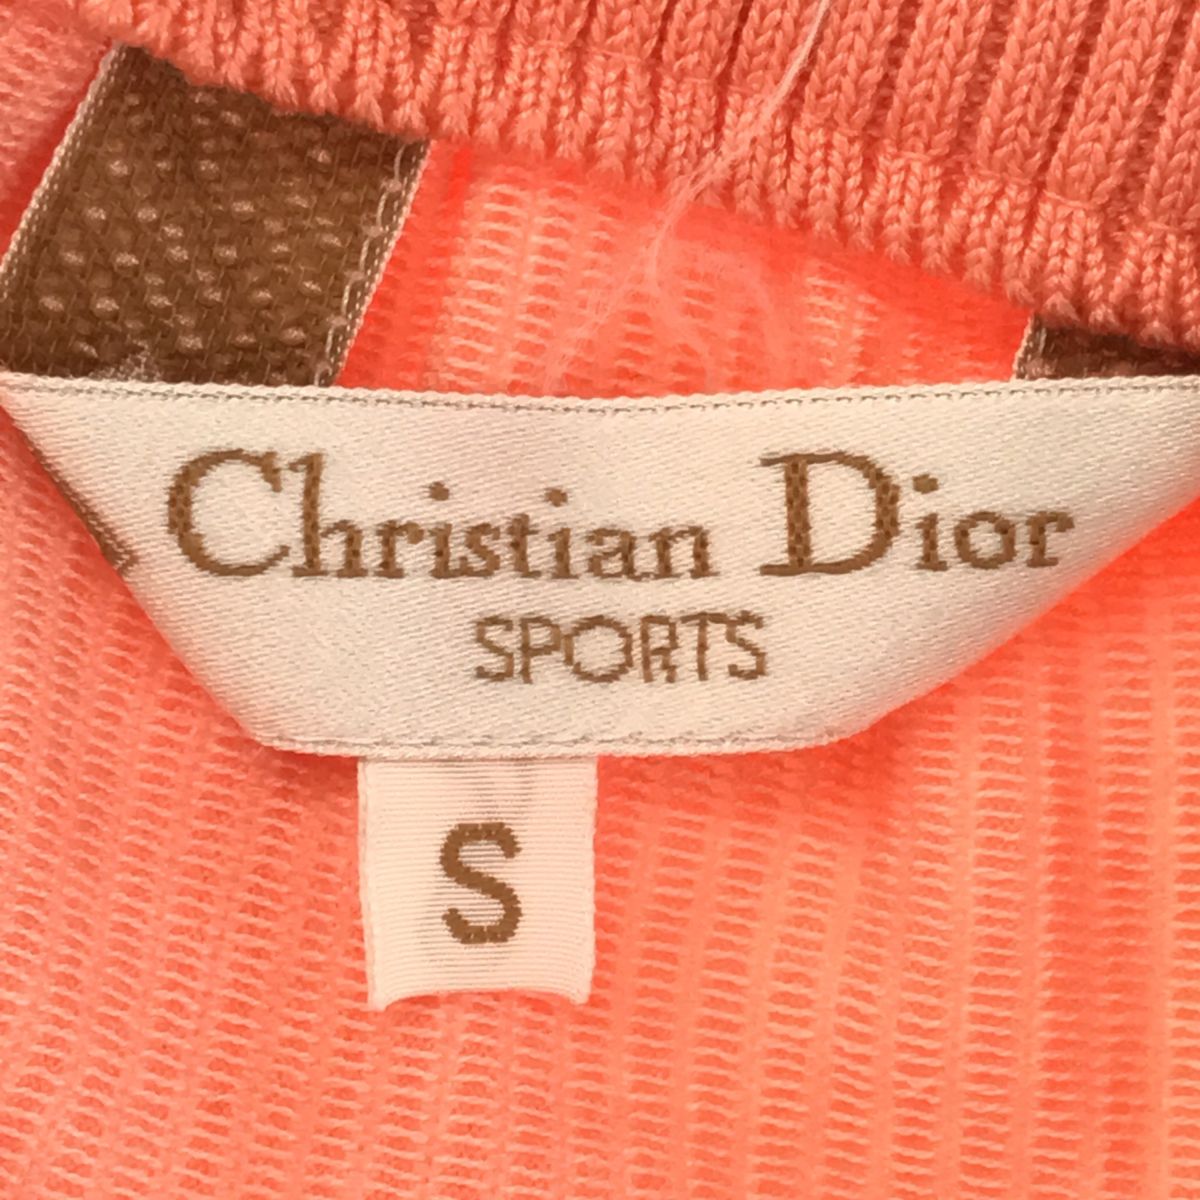 Christian Dior ストライプスカート S